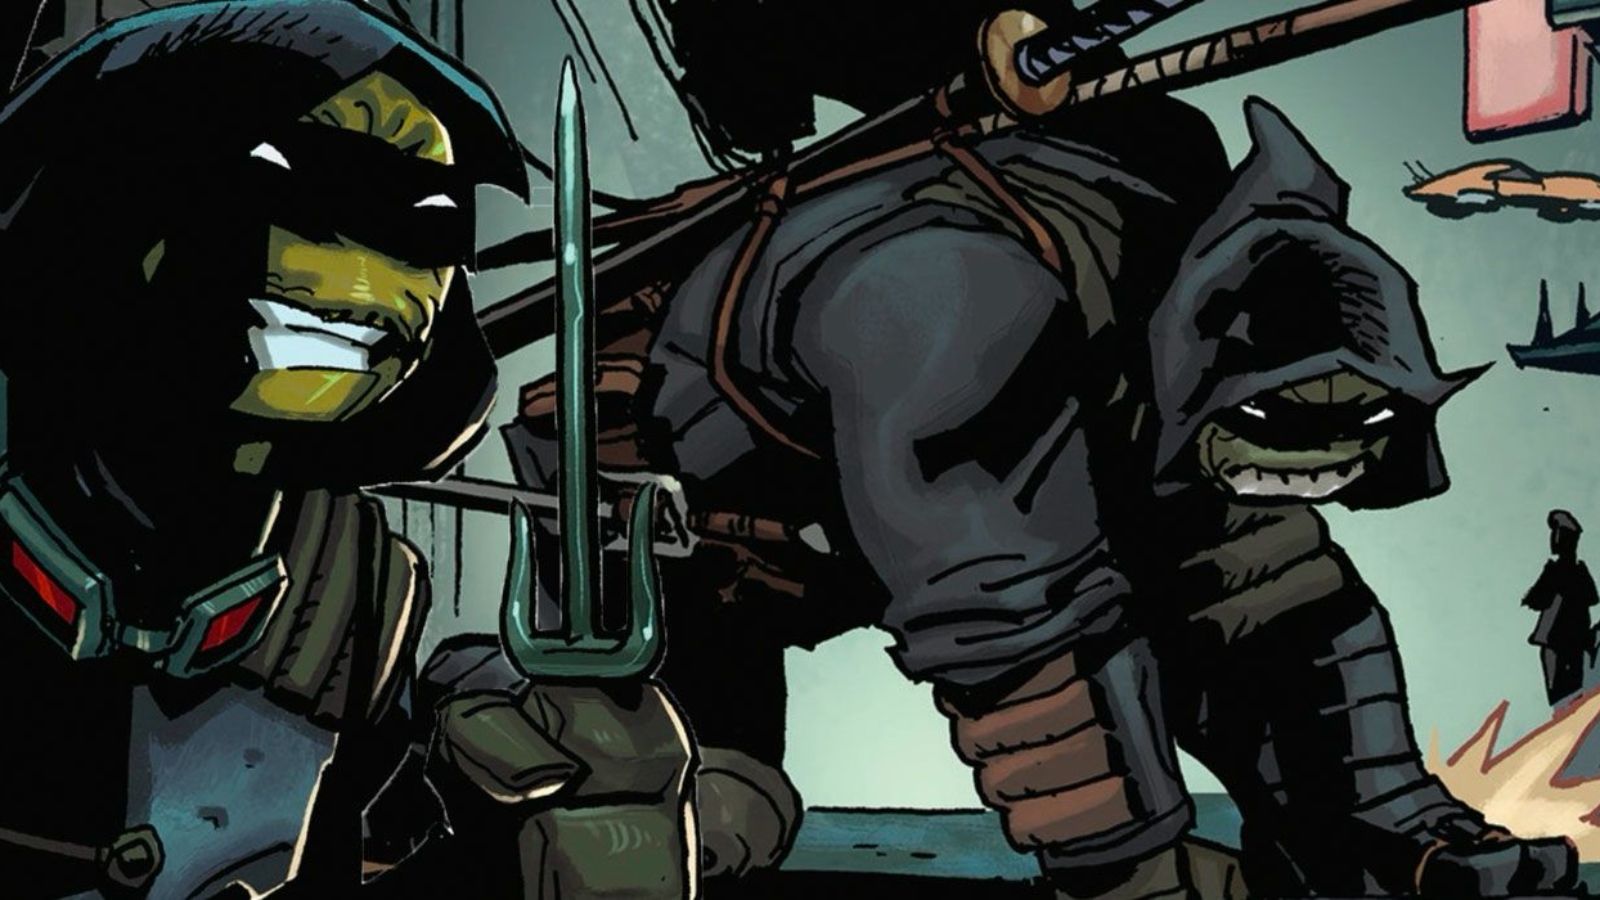 Teenage Mutant Ninja Turtles The Last Ronin Action RPG Announced